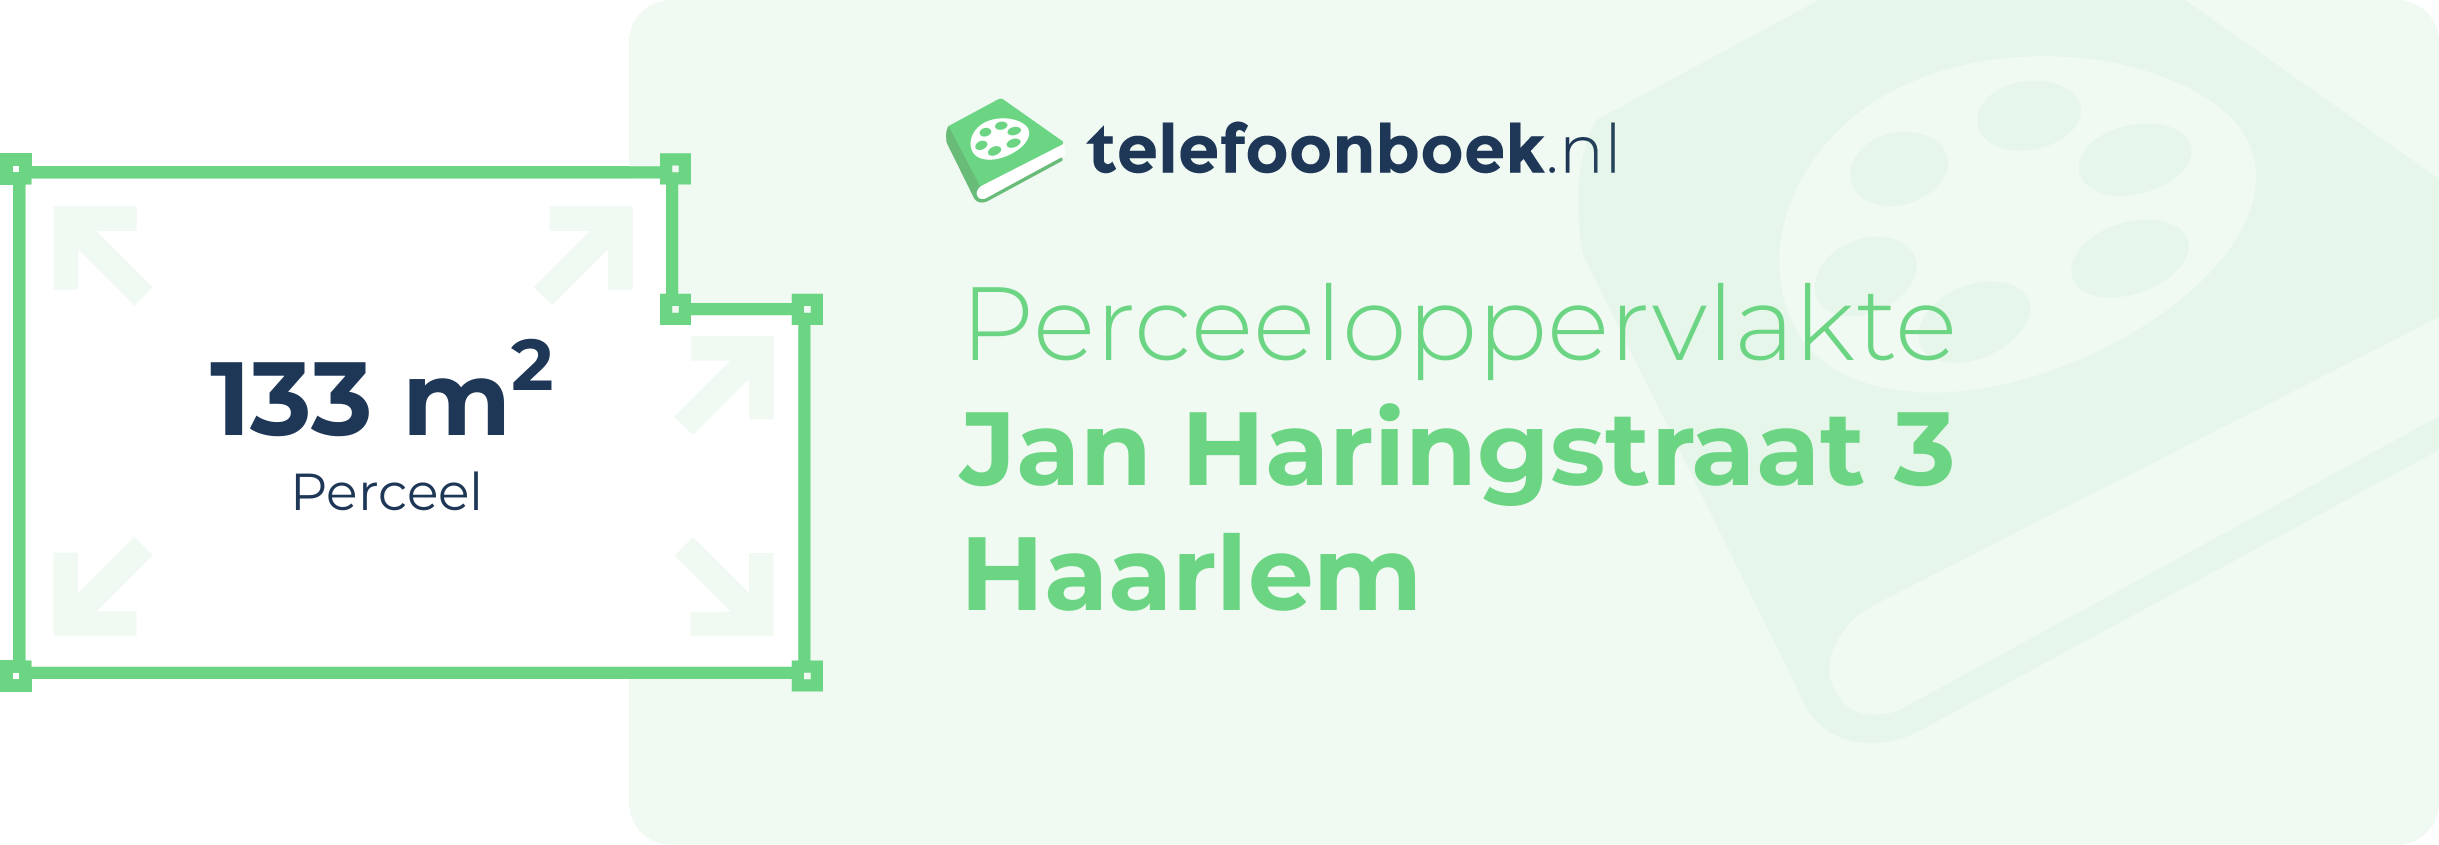 Perceeloppervlakte Jan Haringstraat 3 Haarlem